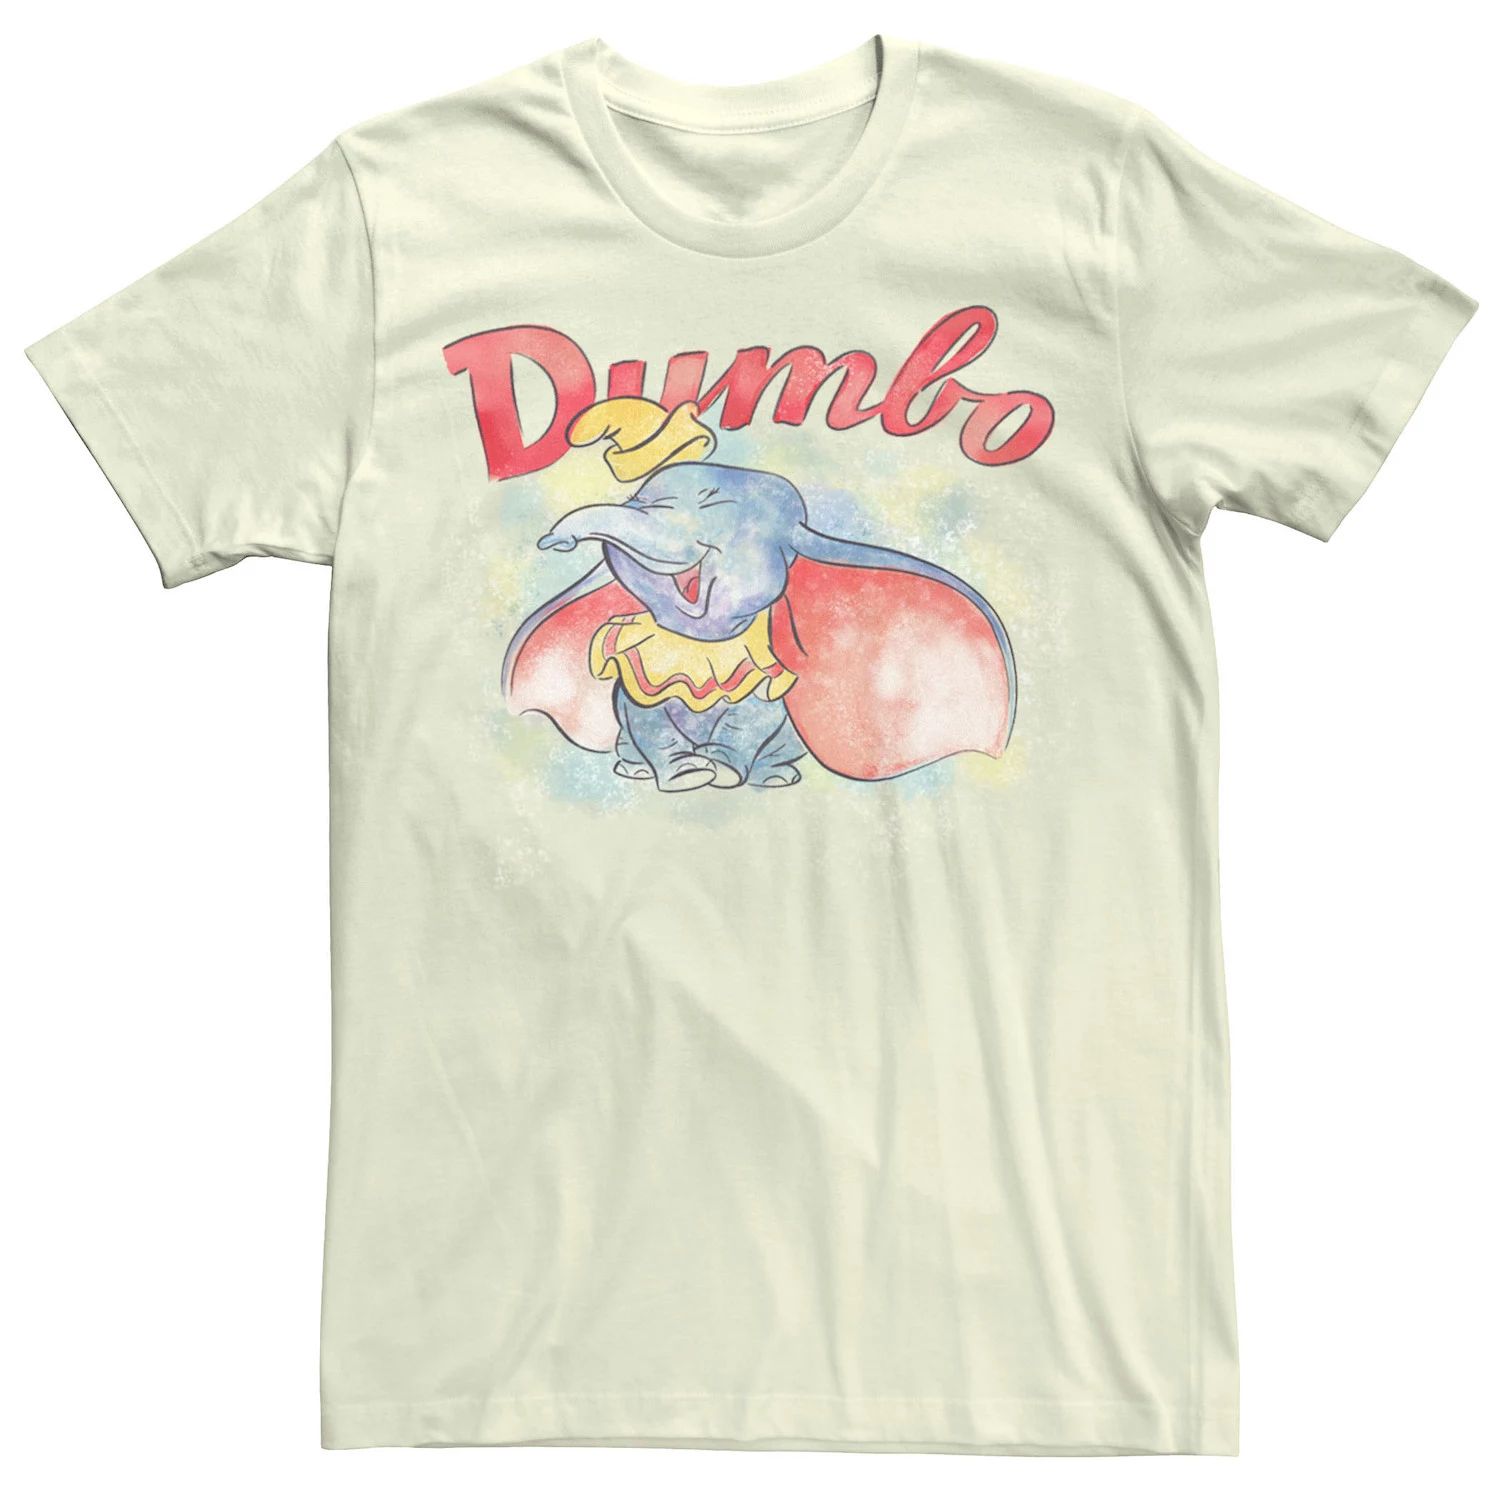 Мужская футболка с акварельным портретом Dumbo Disney